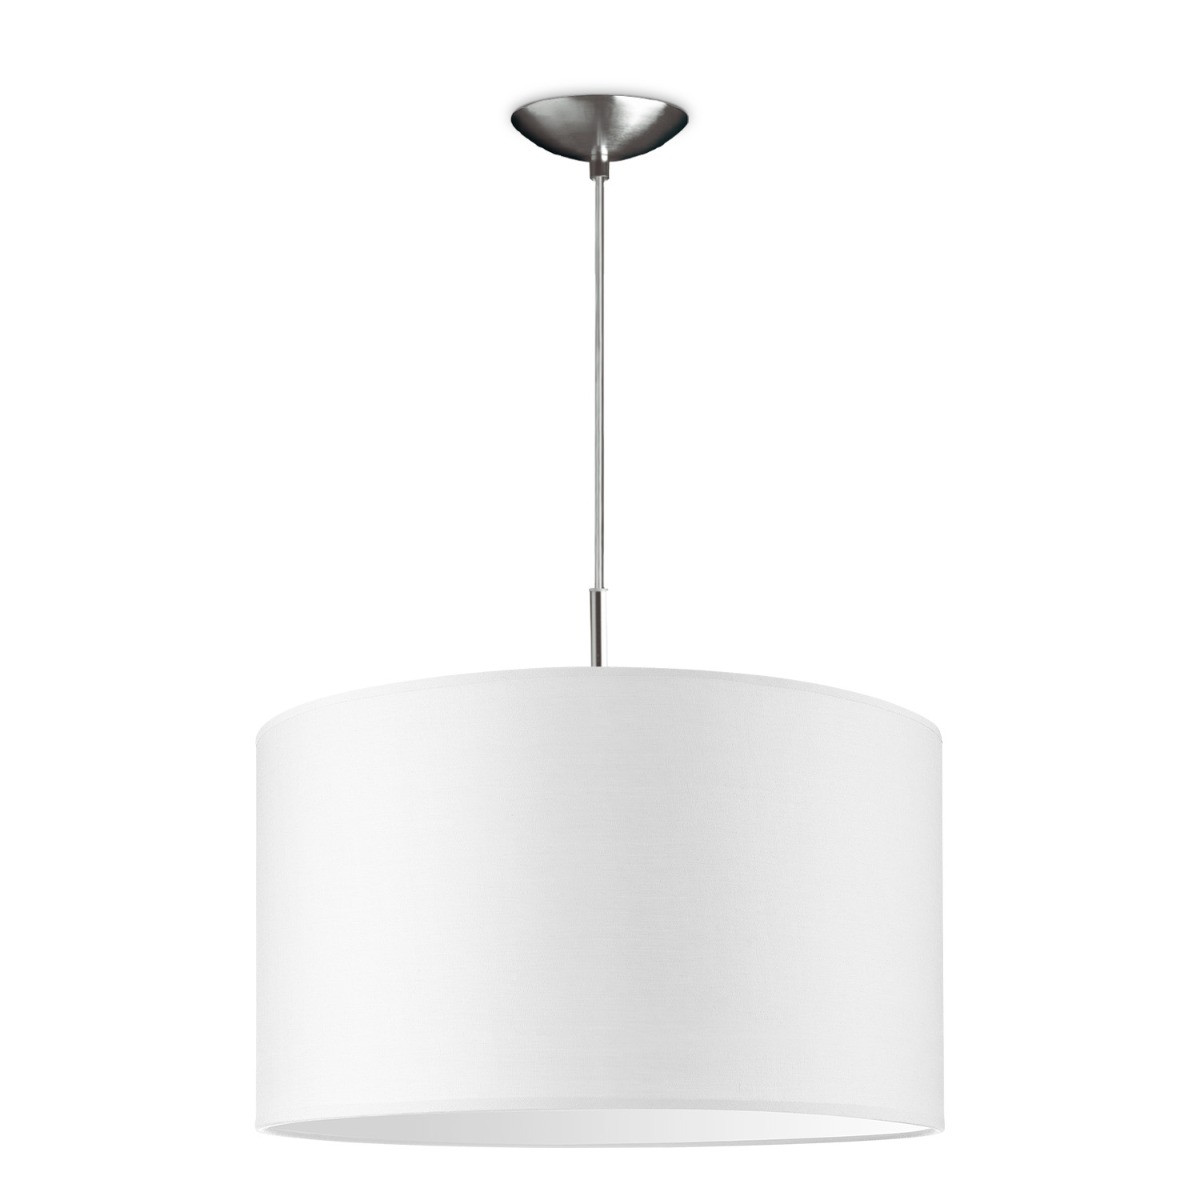 Light depot - hanglamp tube deluxe bling Ø 40 cm - wit - Outlet